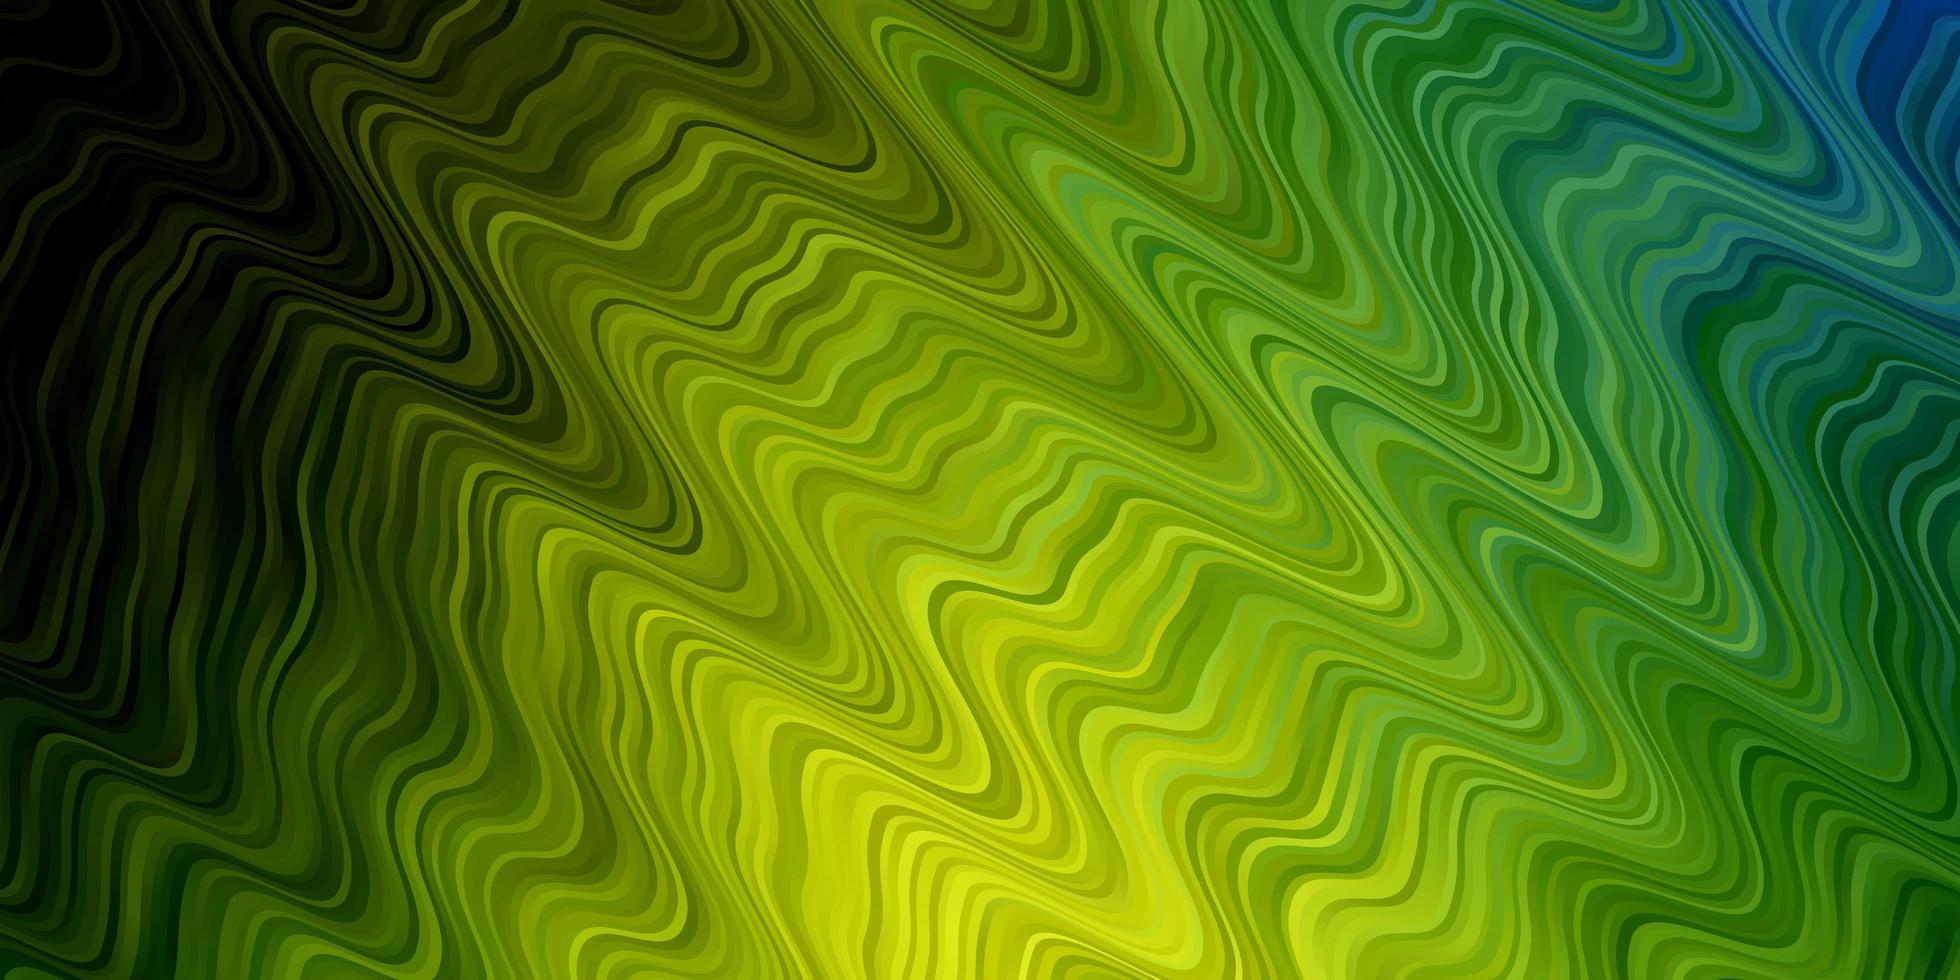 modelo de vetor verde e amarelo claro com linhas curvas. ilustração colorida em estilo abstrato com linhas dobradas. modelo para celulares.